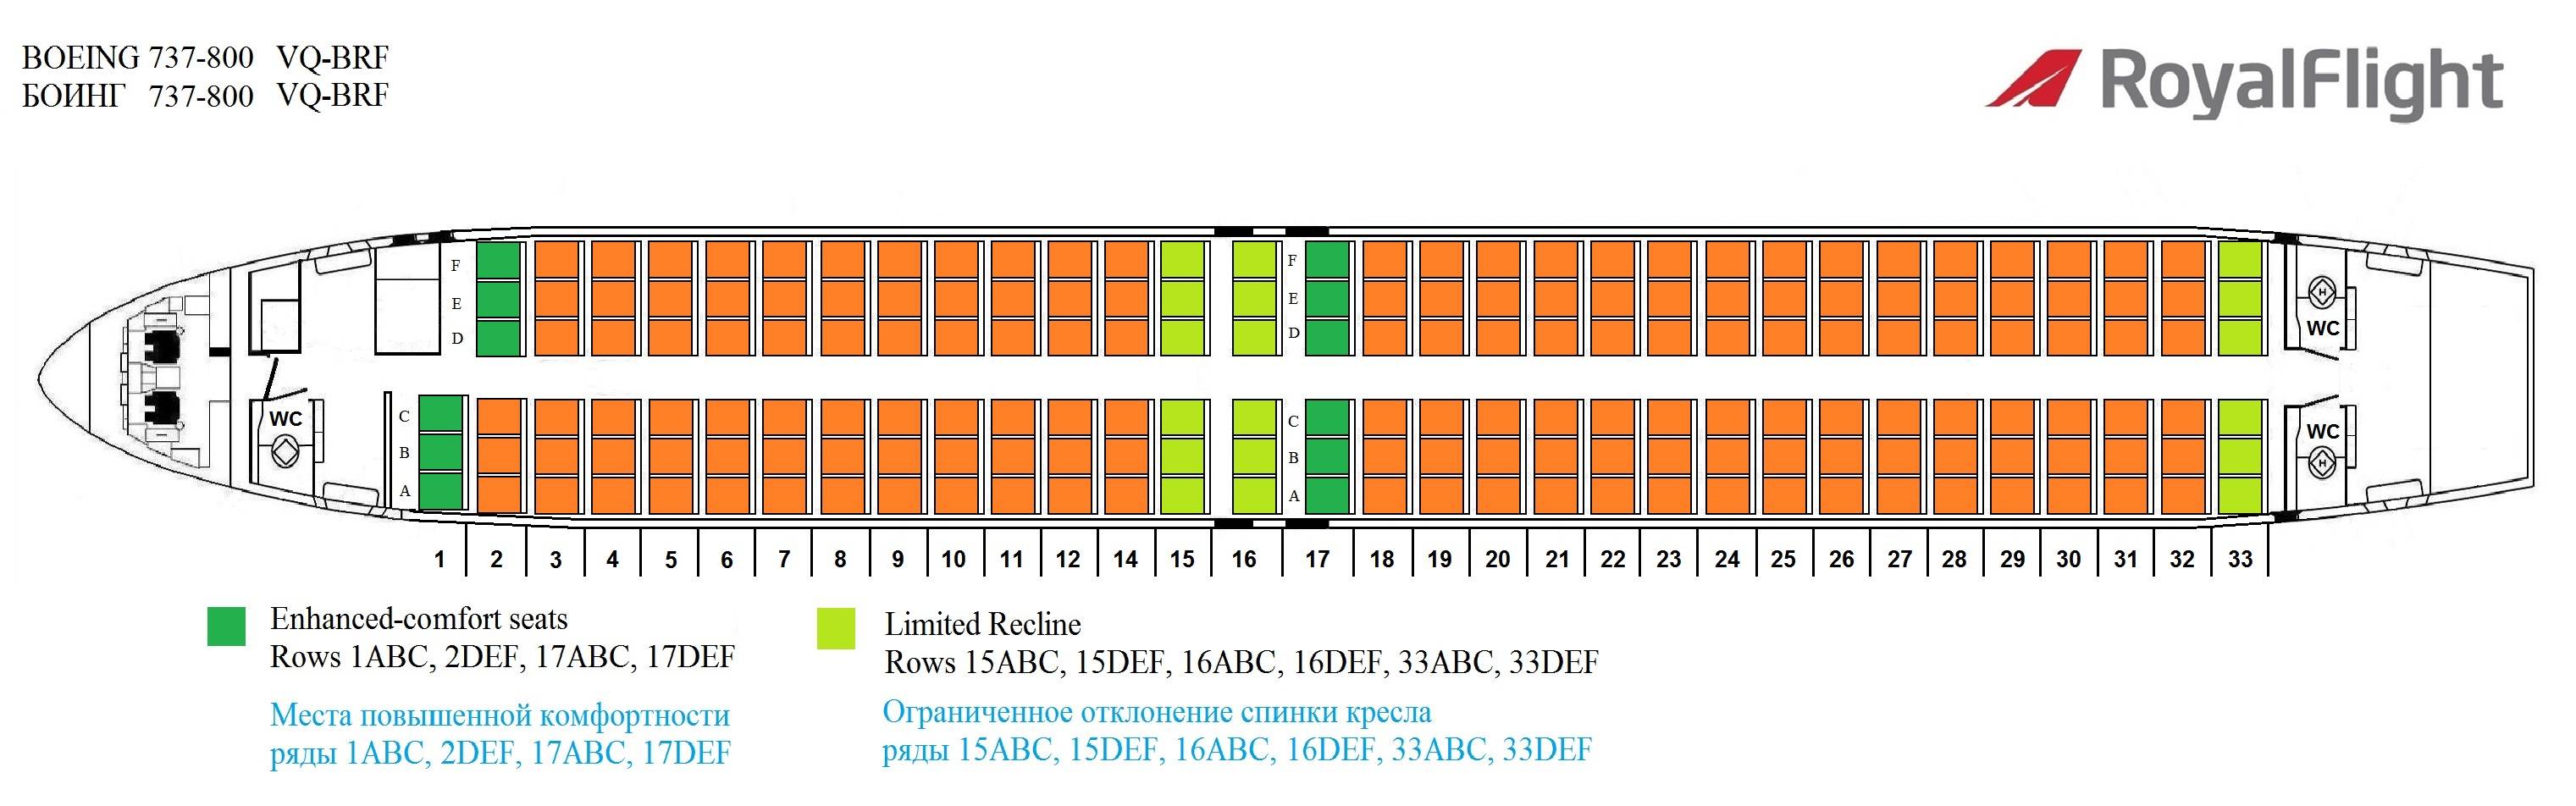 Схема салона самолета Боинг 737 800 Флай Дубай